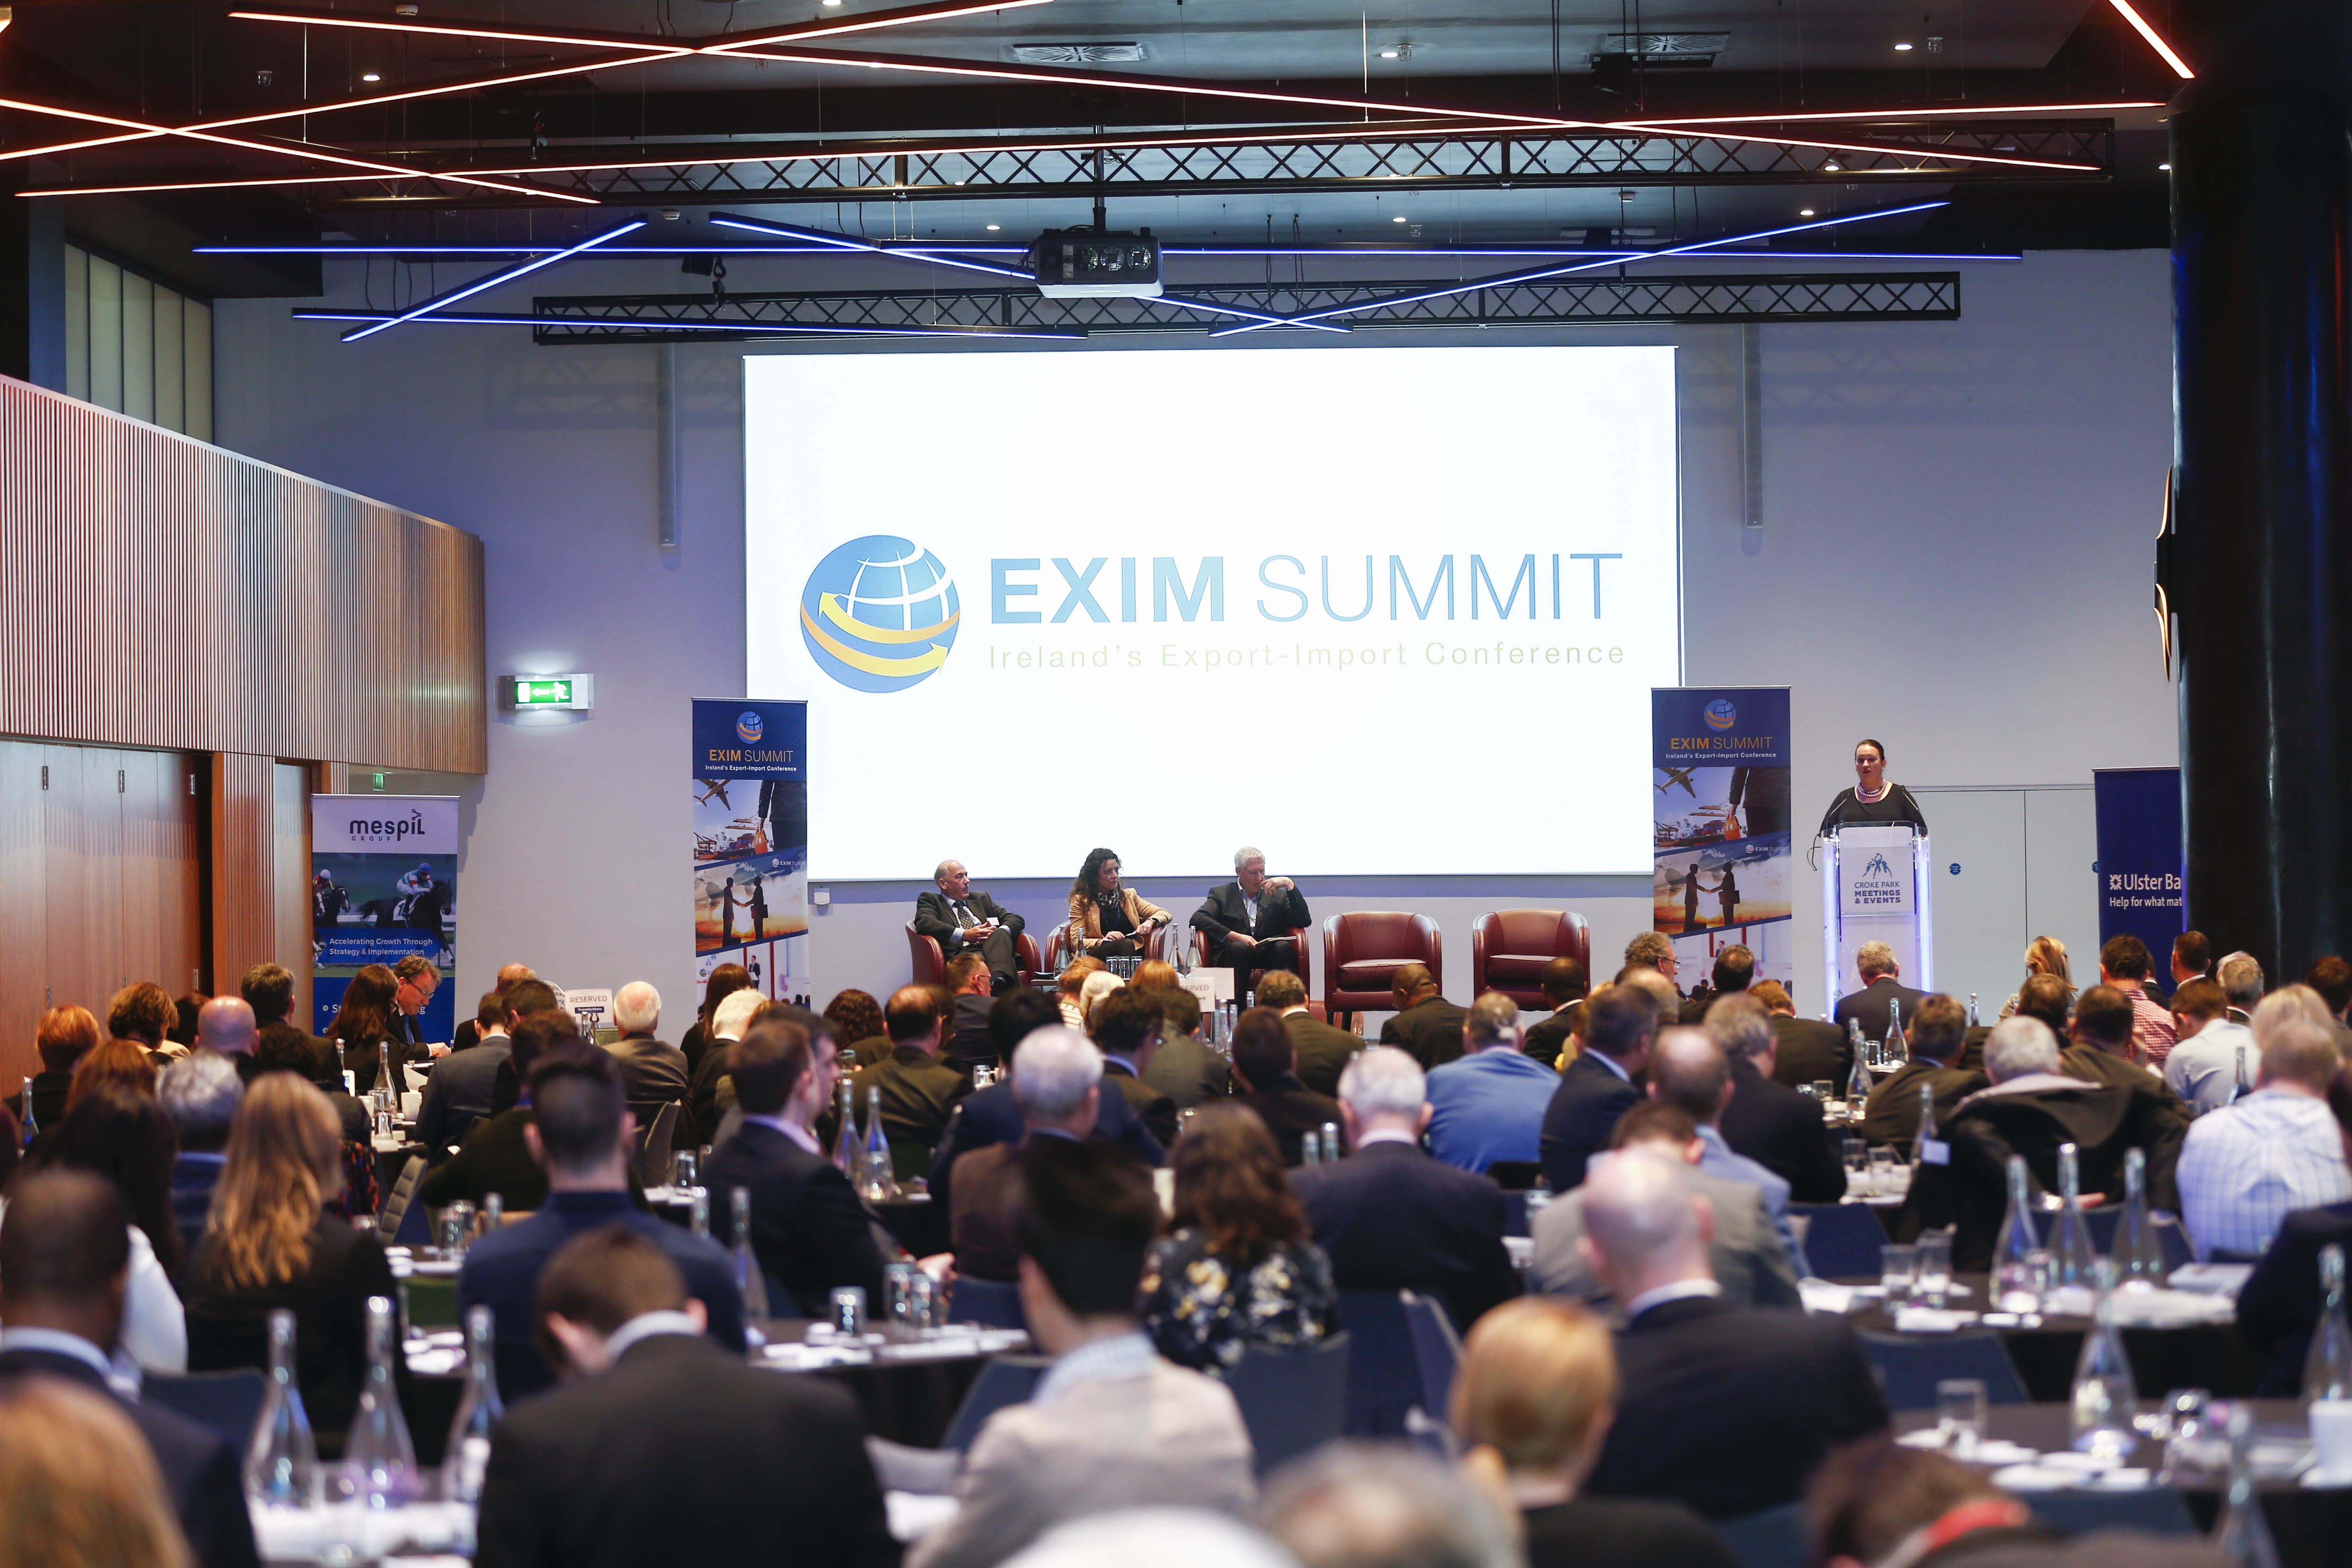 EXIM Summit 2016